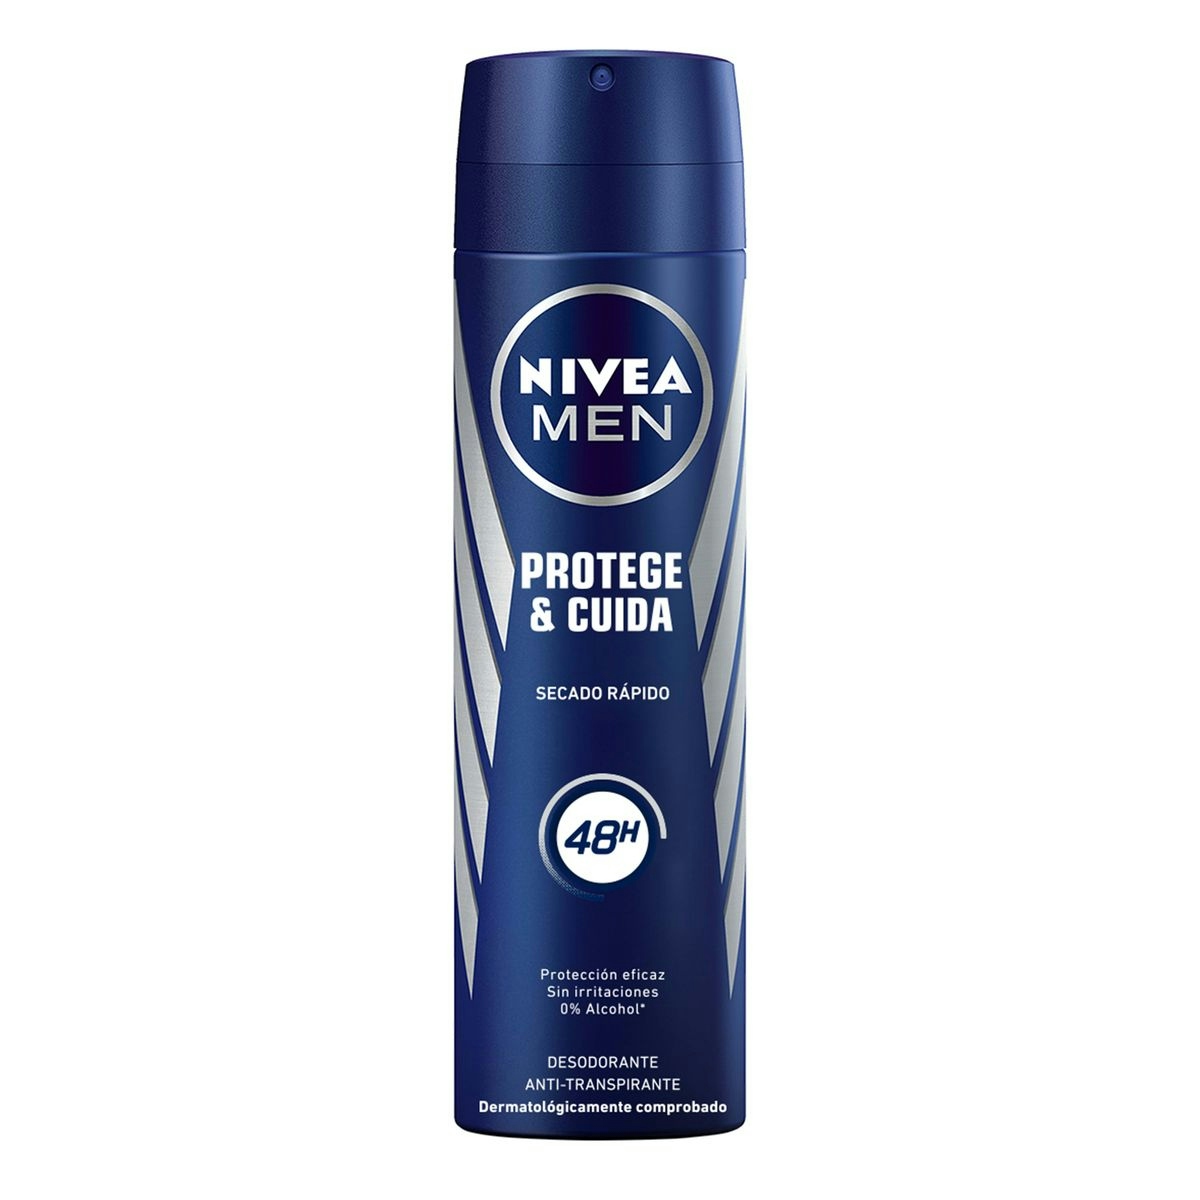 Desodorante Men NIVEA protege y cuida spray 200 ml